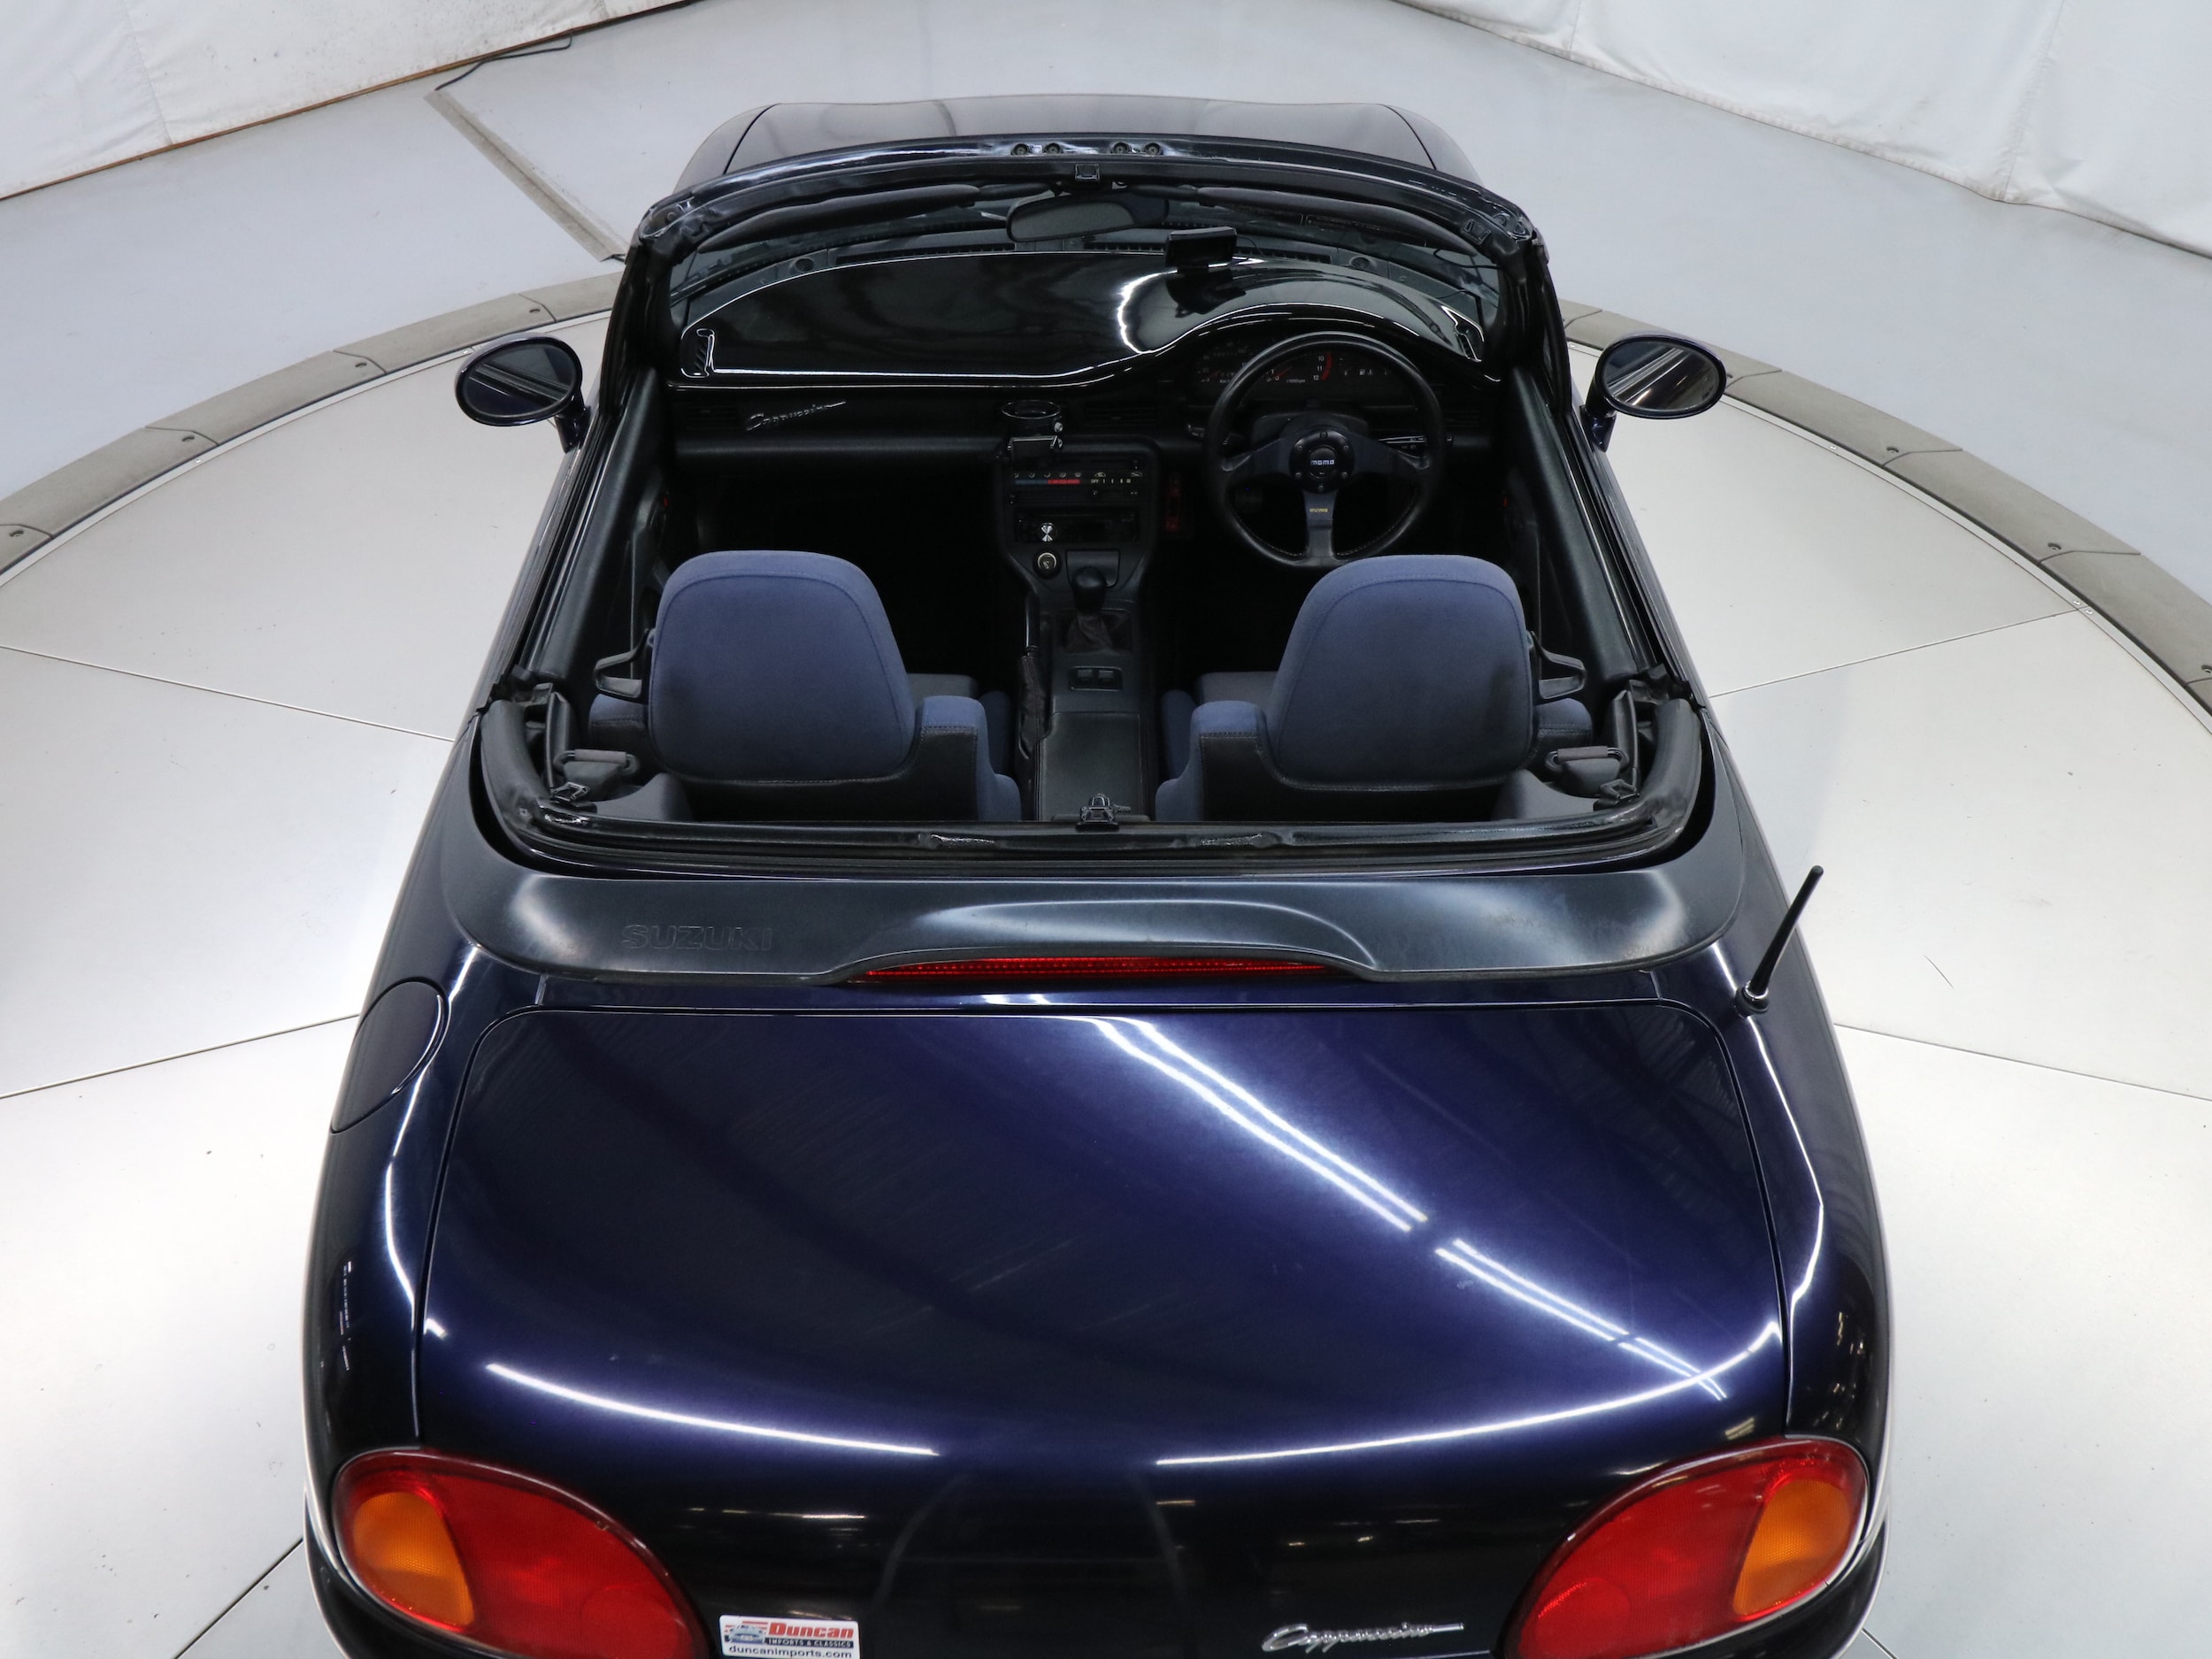 1994 Suzuki Cappuccino 39